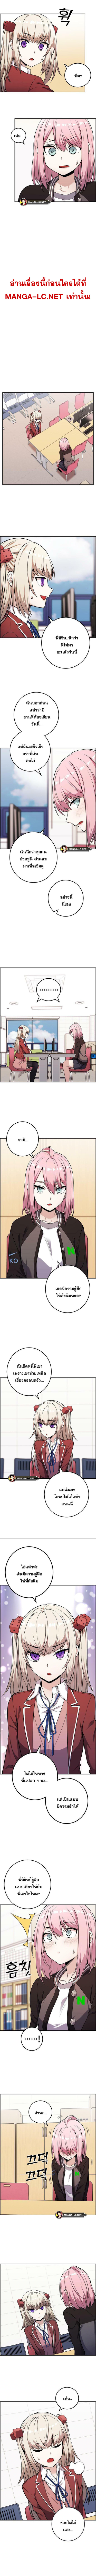 Webtoon Character Na Kang Lim ตอนที่ 45 (3)